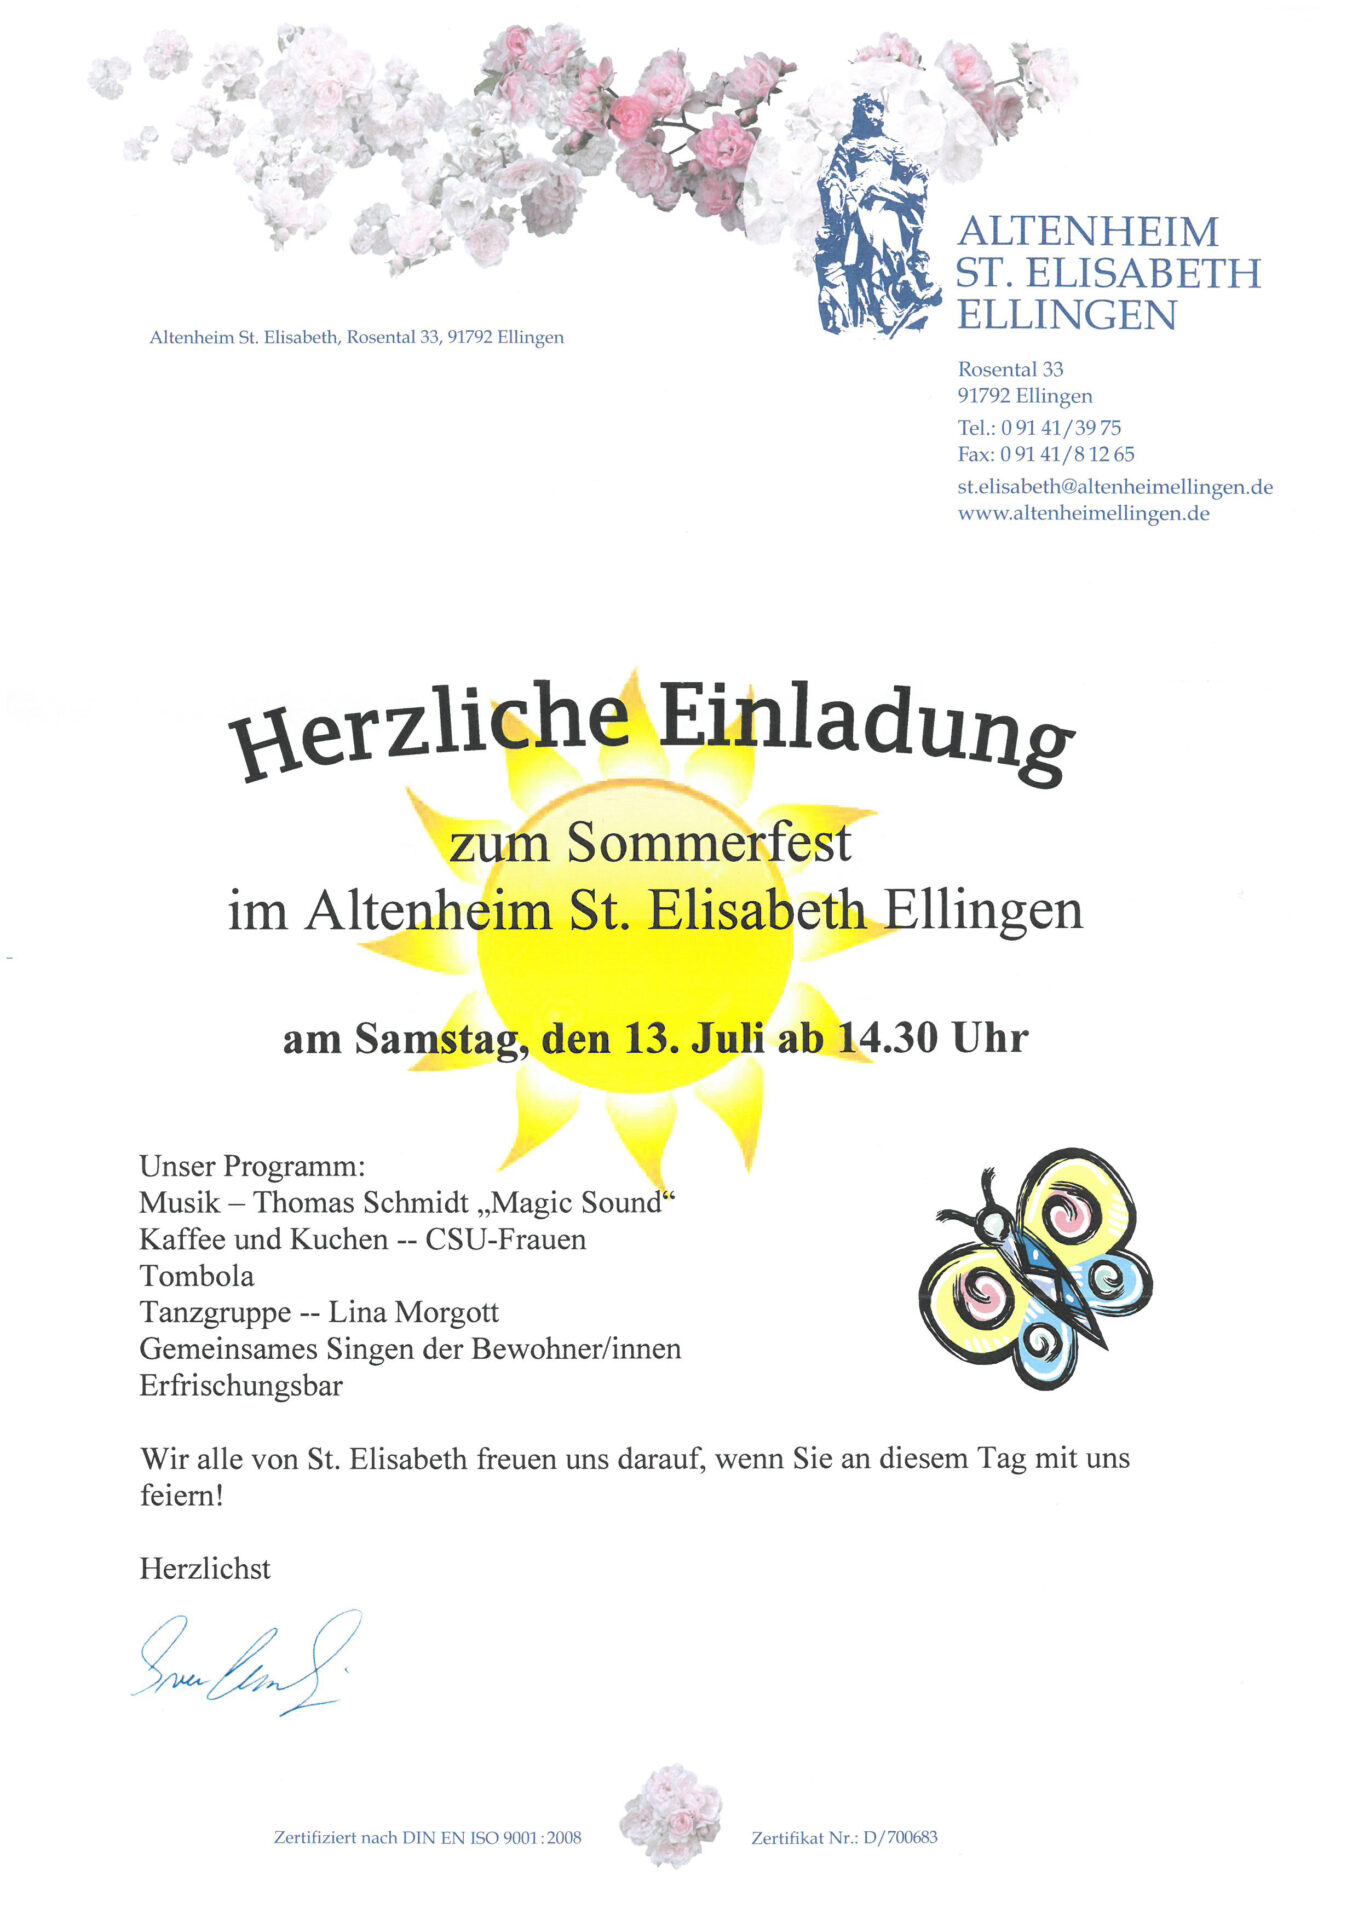 Herzliche Einladung Zum Sommerfest 19 Altenheim Ellingen